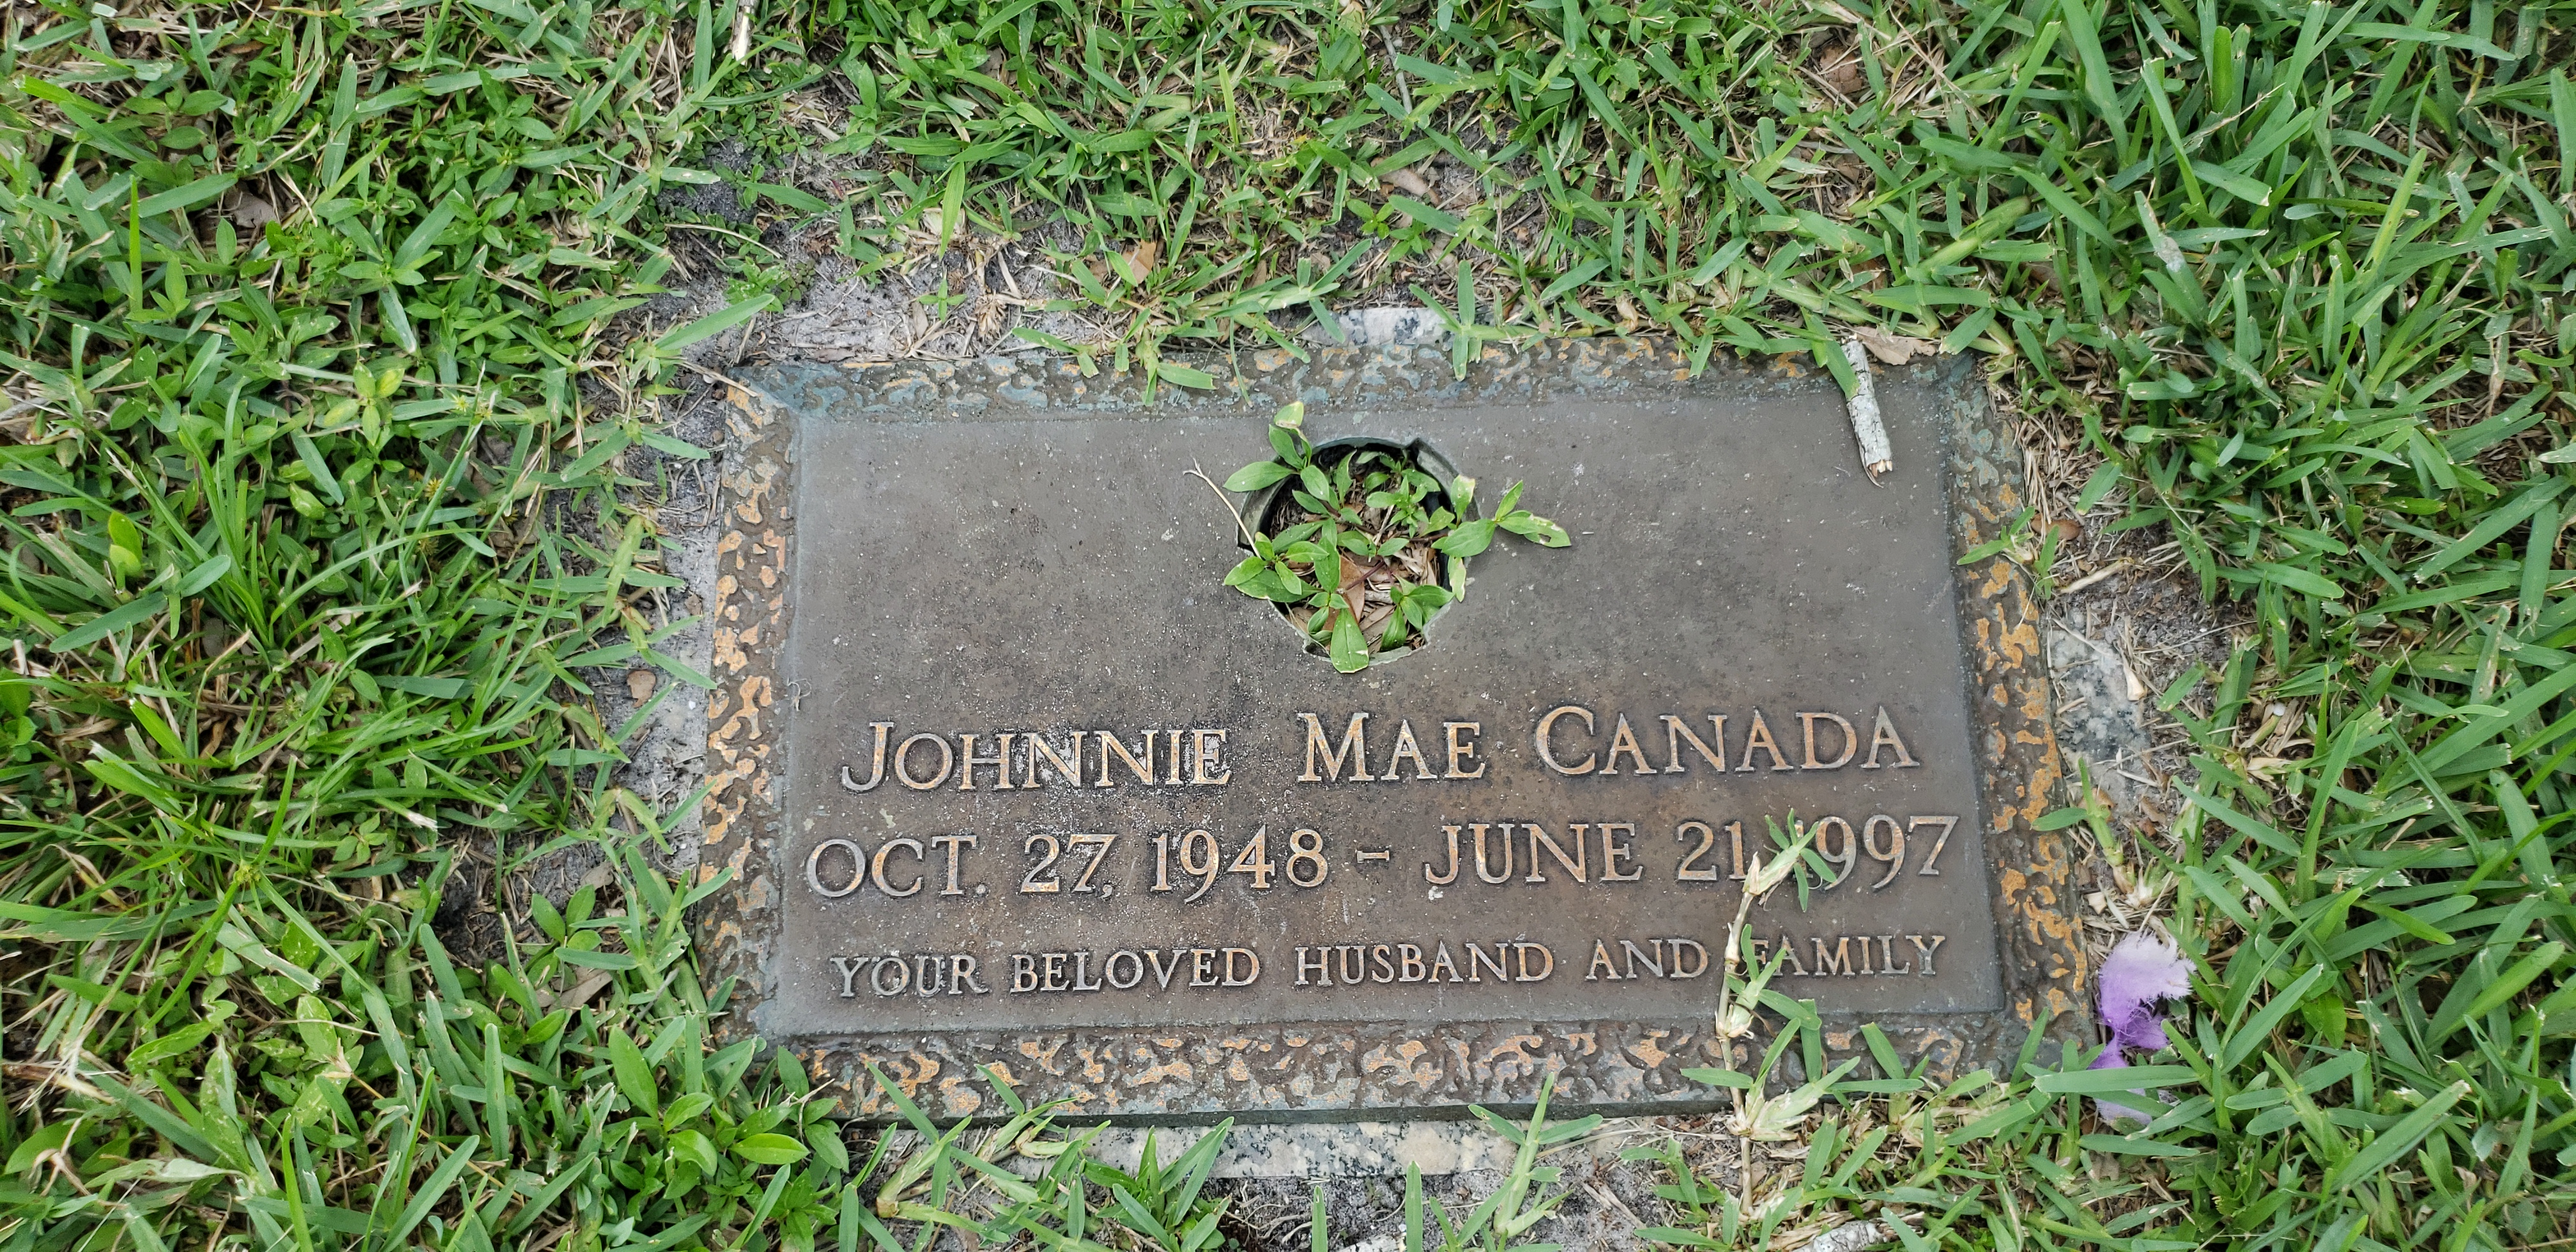 Johnnie Mae Canada